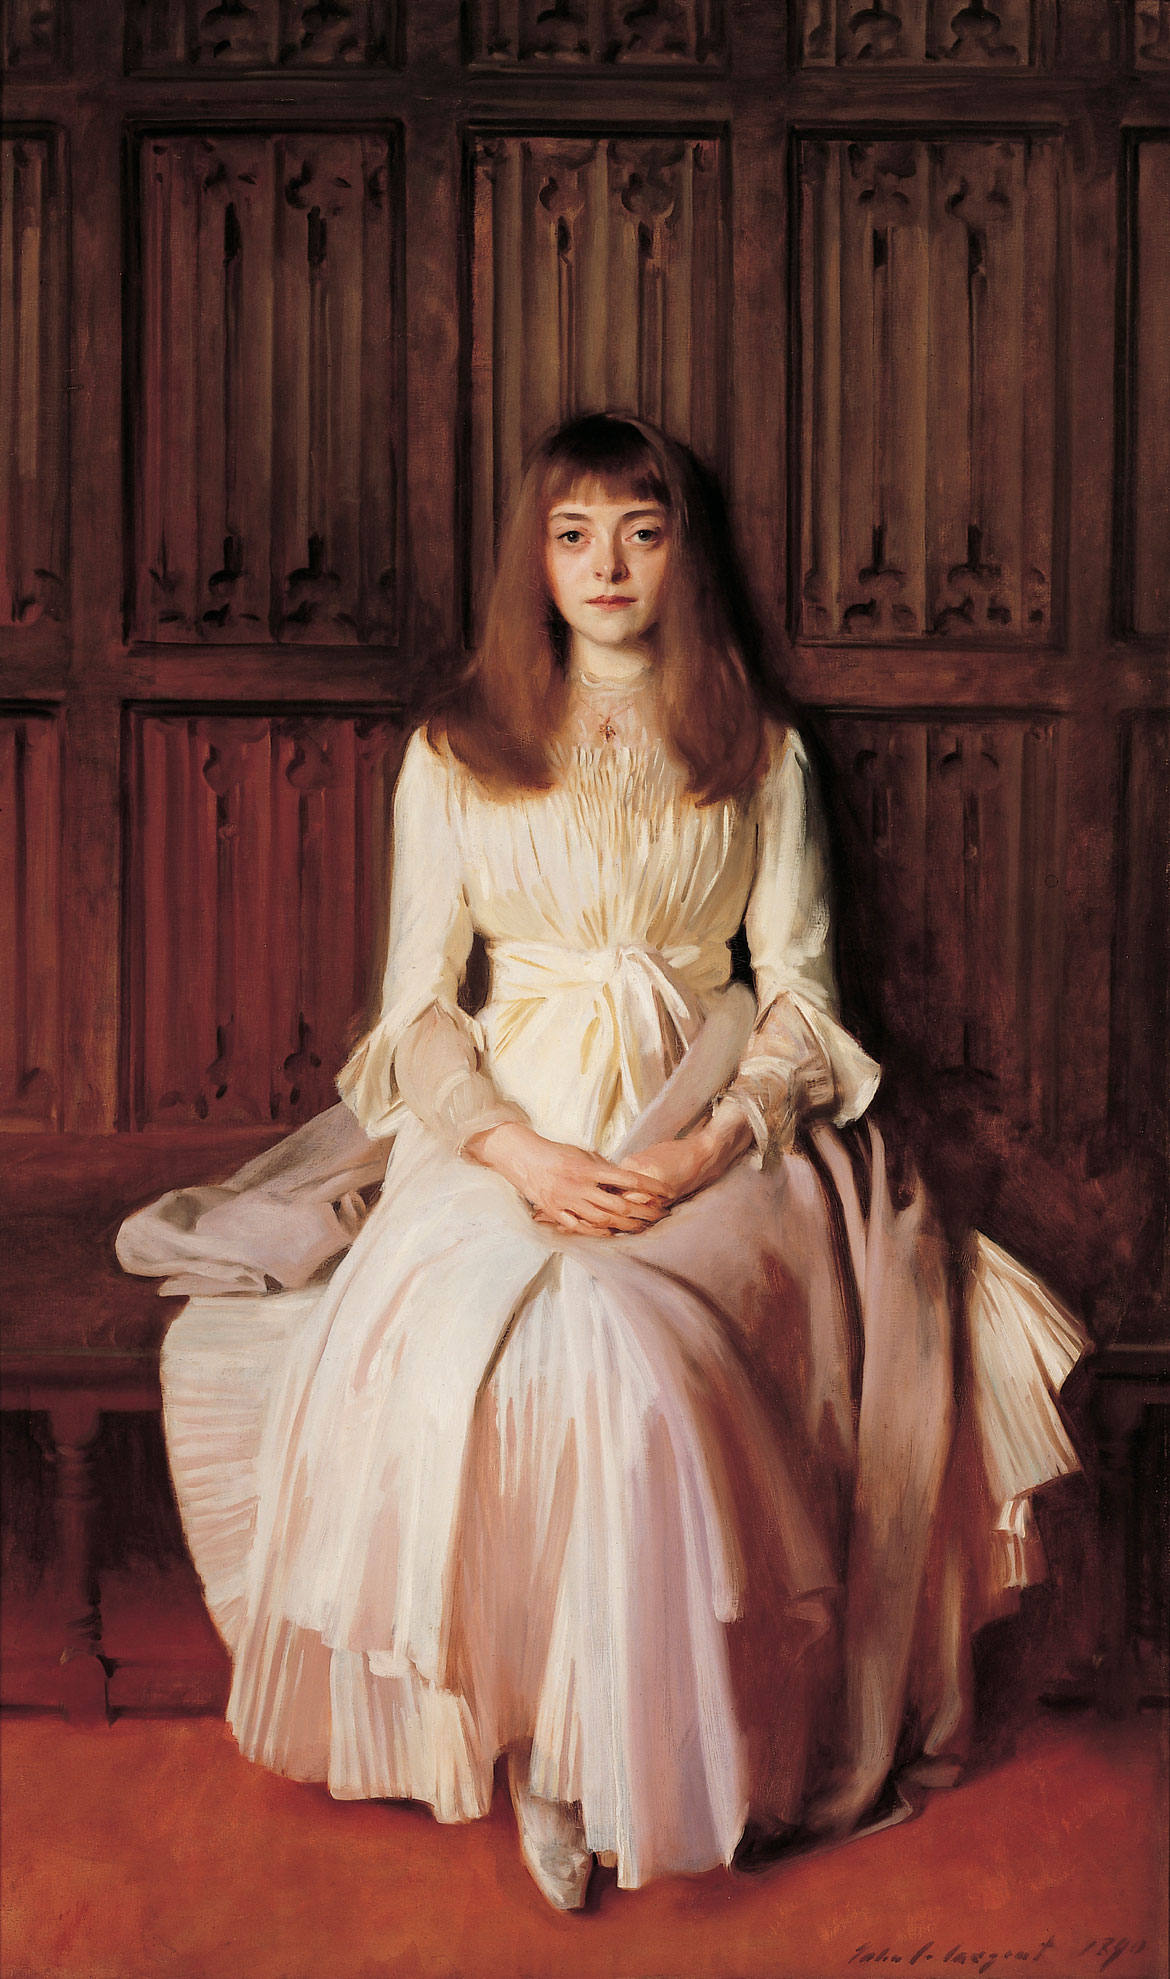 John Singer Sargent, "Elsie Palmer," 1889-1890, oil on canvas.